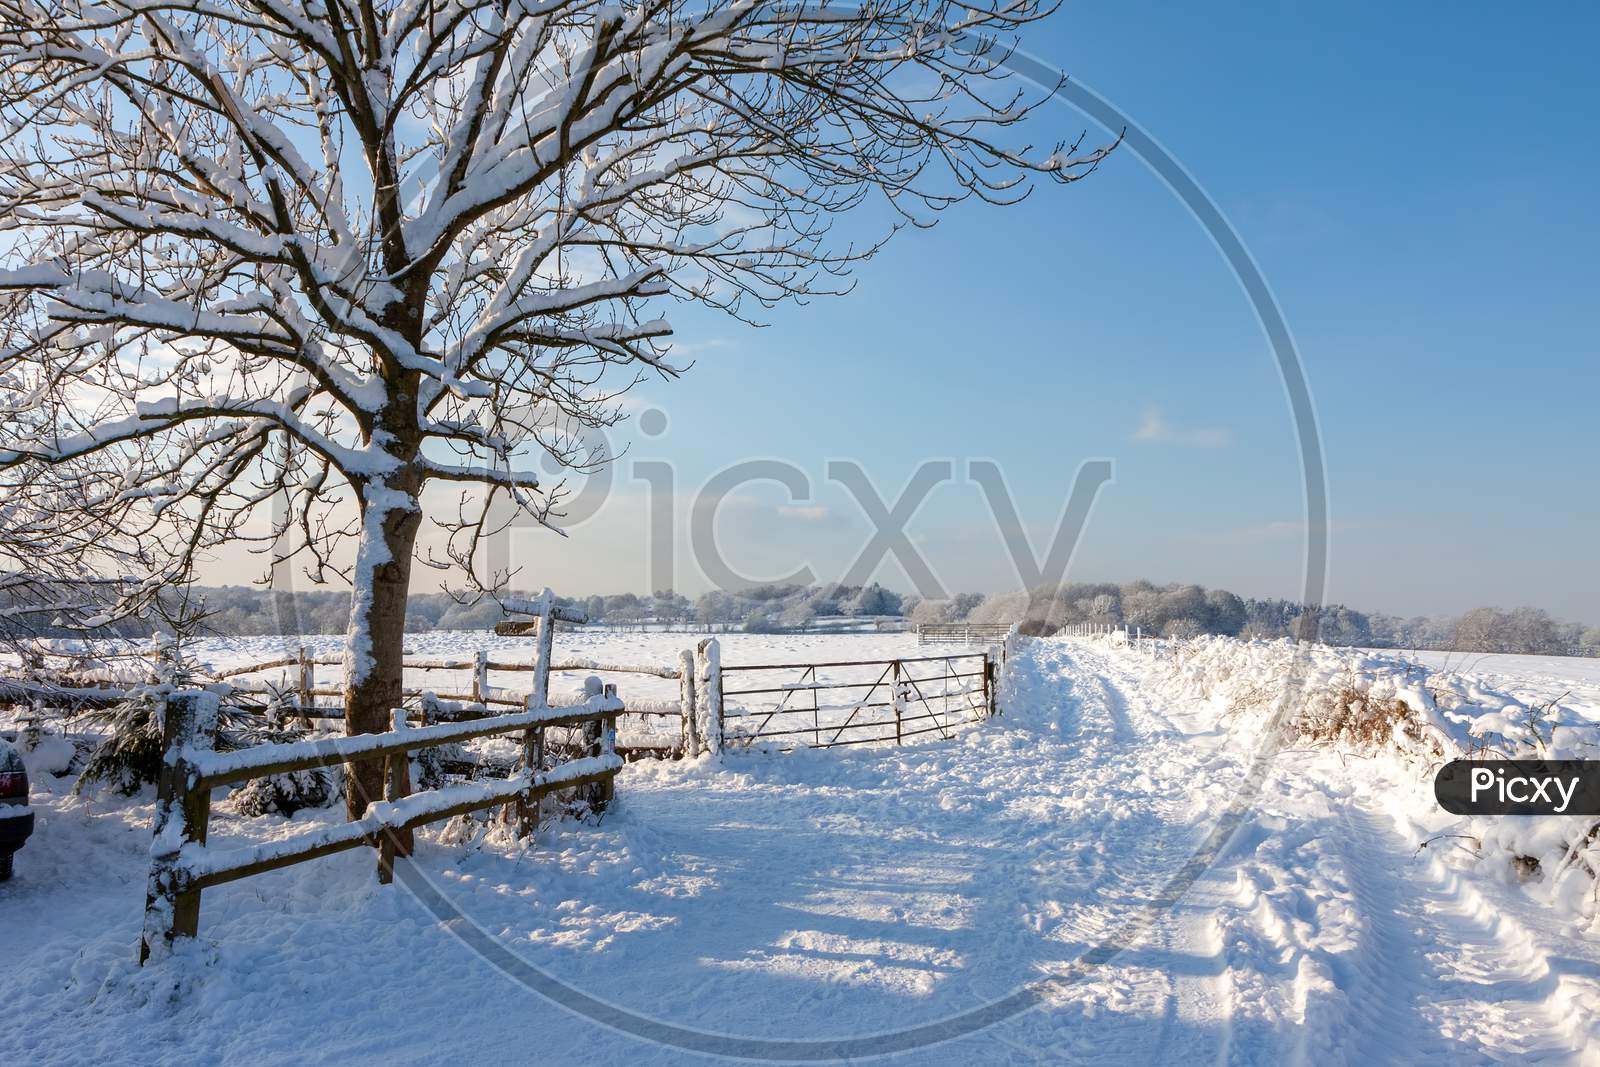 Winter Scene Near East Grinstead